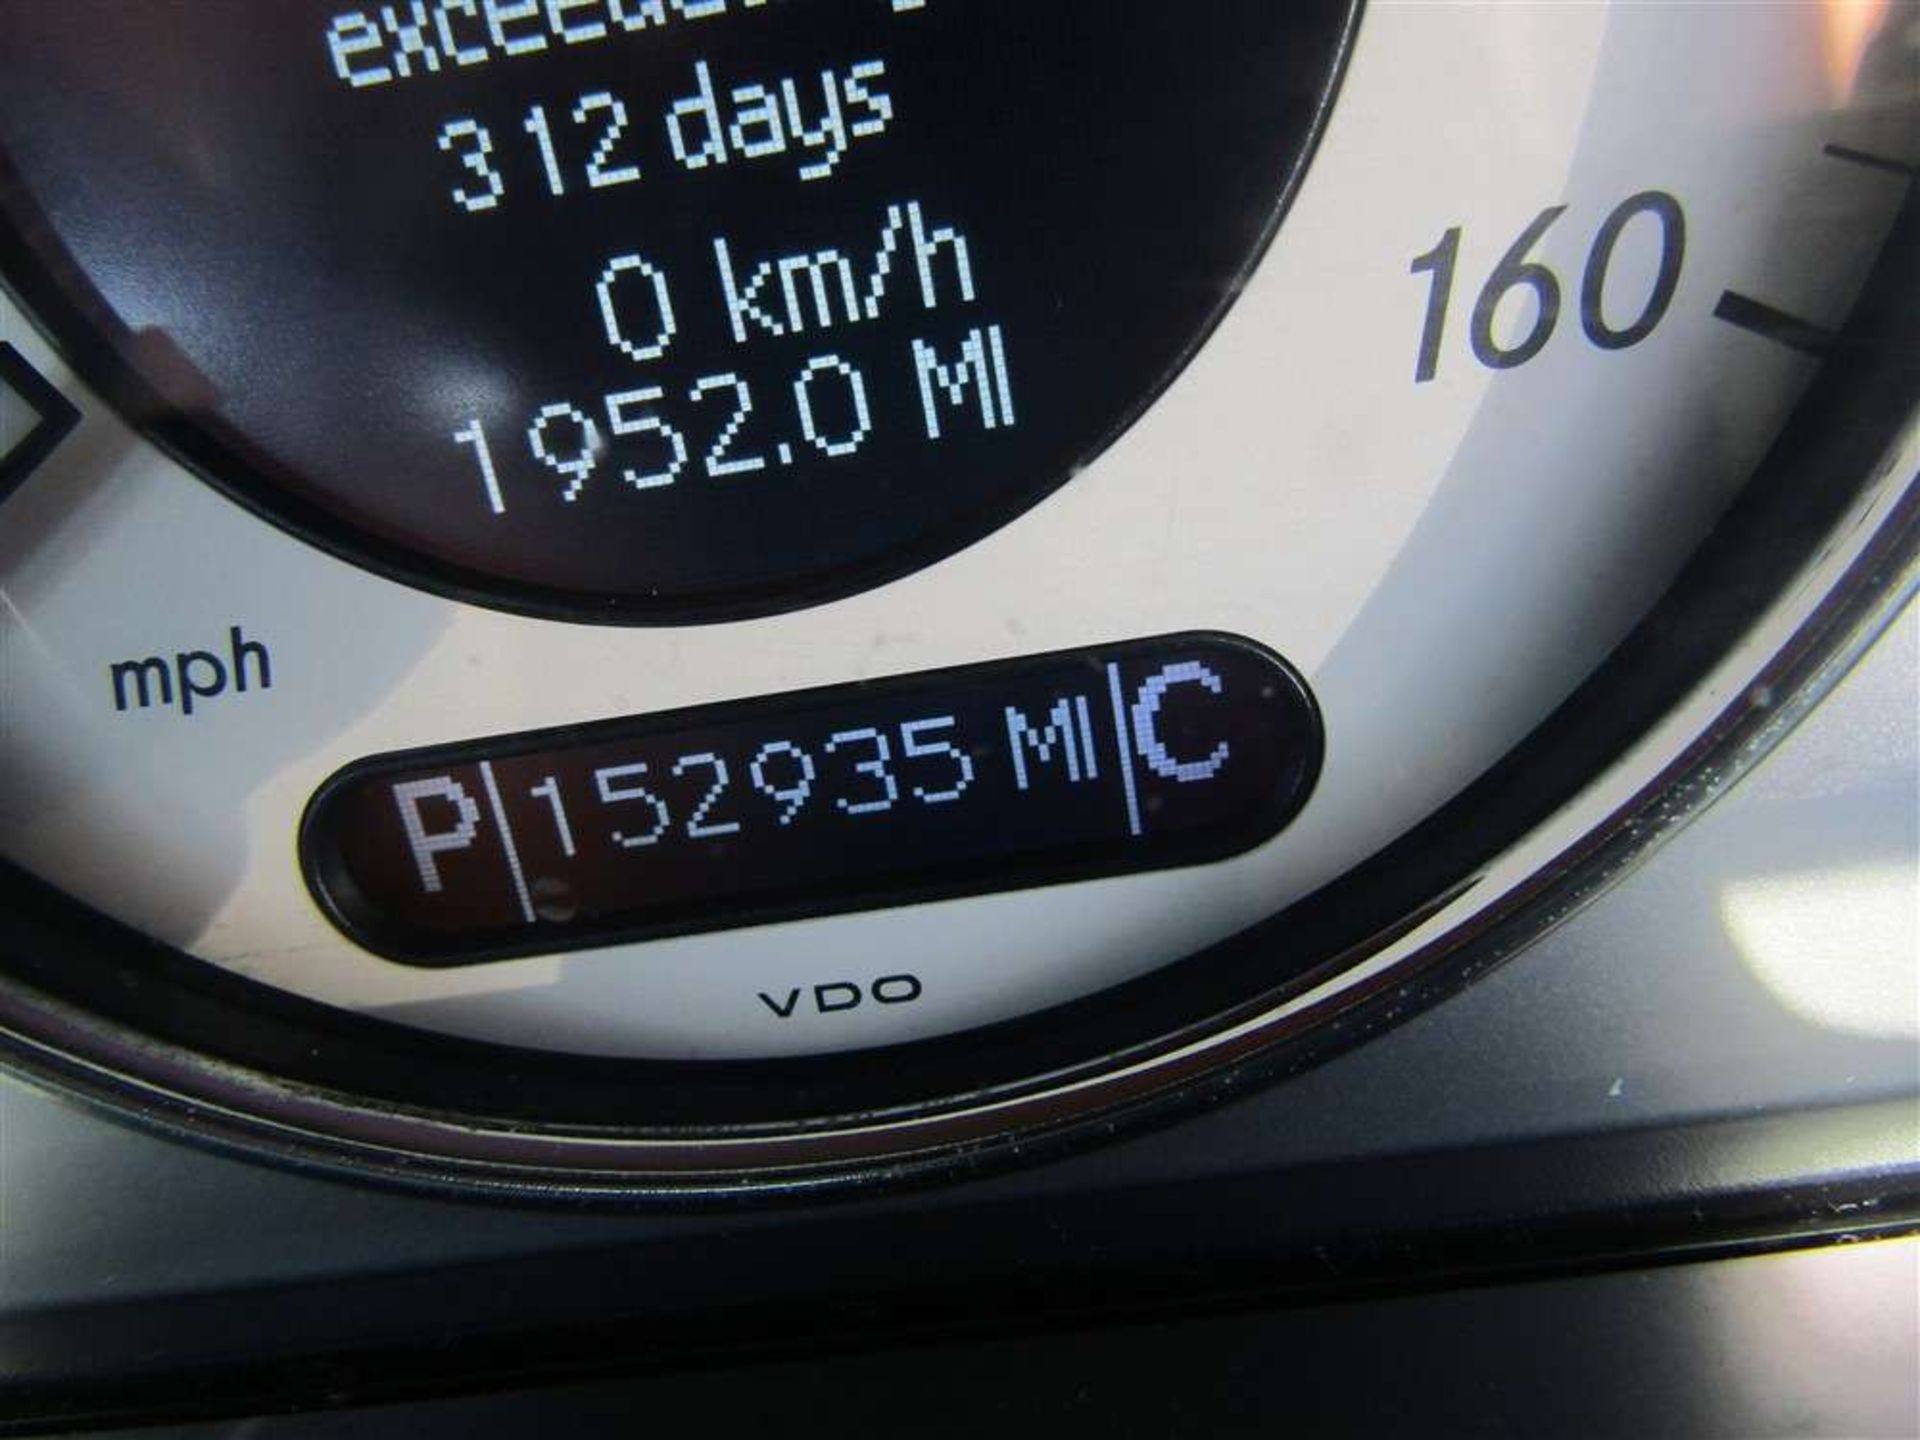 2004 54 reg Mercedes E320 CDI Avantgarde Auto - Image 6 of 6